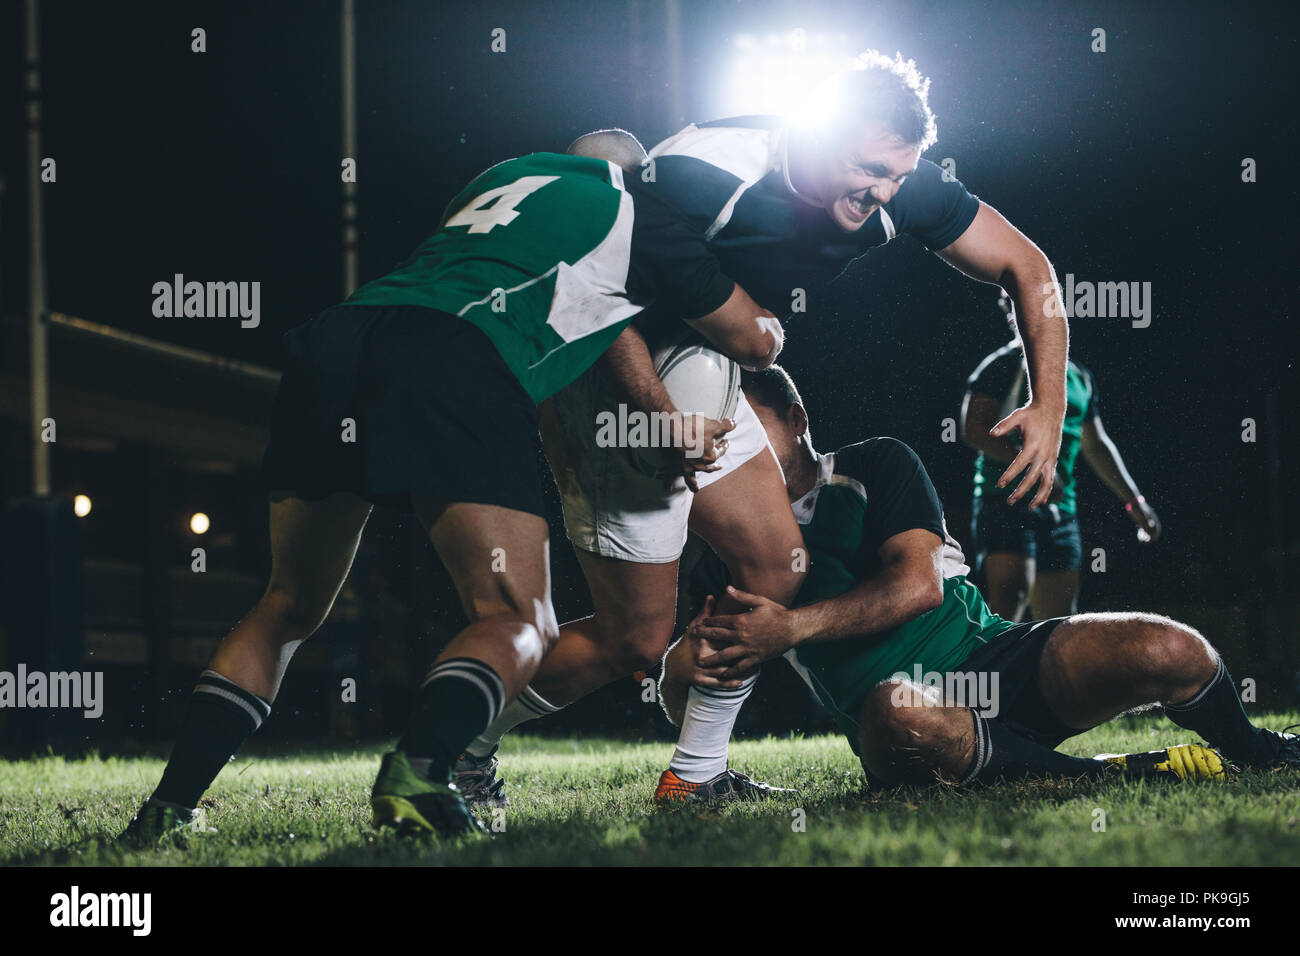 Starker Rugby-Spieler, der versucht, dem gegnerischen Team zu entkommen. Spieler des rugby-Teams treten im Spiel unter Licht an. Stockfoto